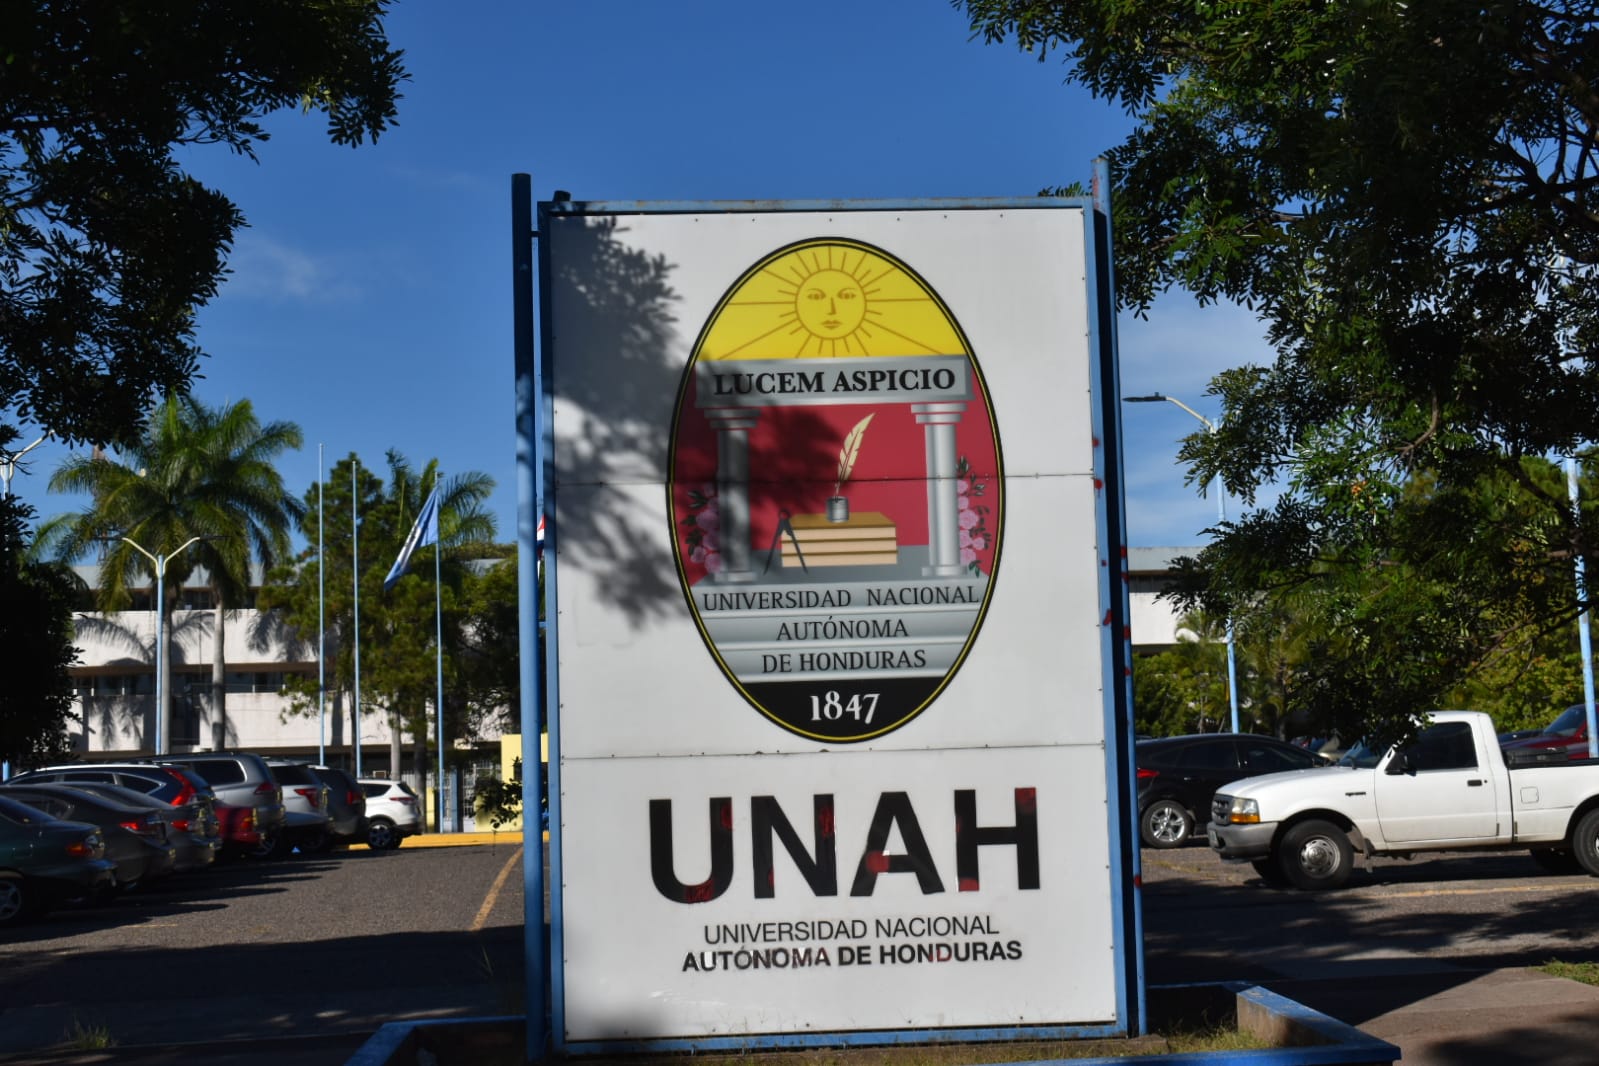 Habilitados los accesos de la UNAH tras dos días de tomas por encapuchados  